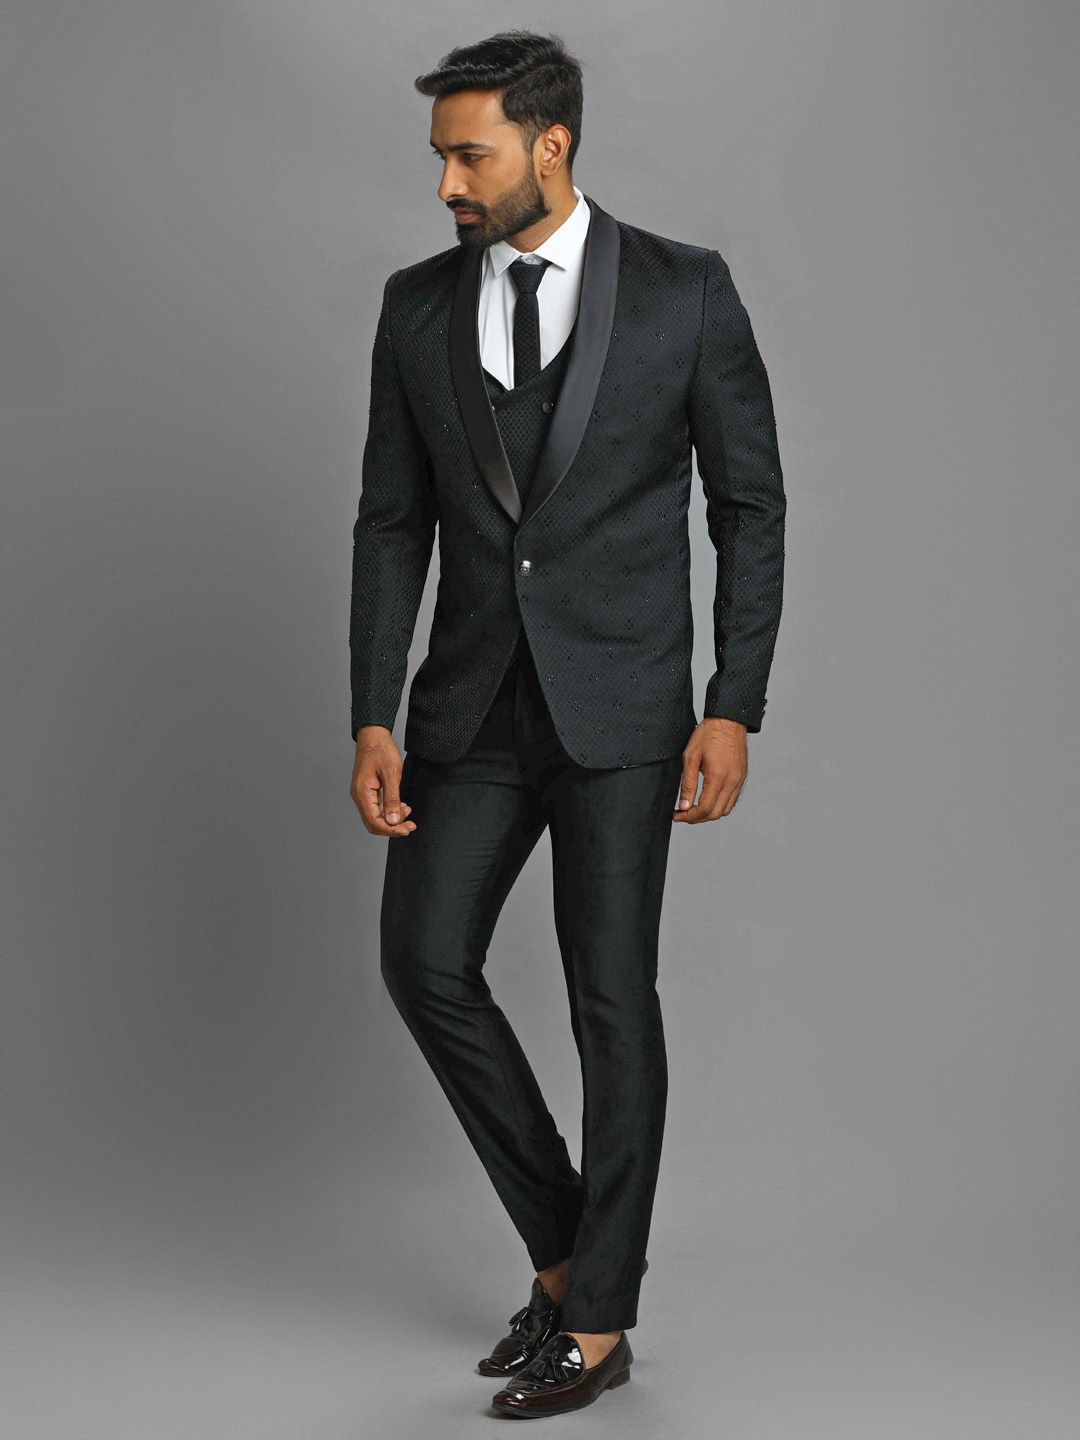 TipTopGents | Black suit men, Black outfit men, Full black outfit men